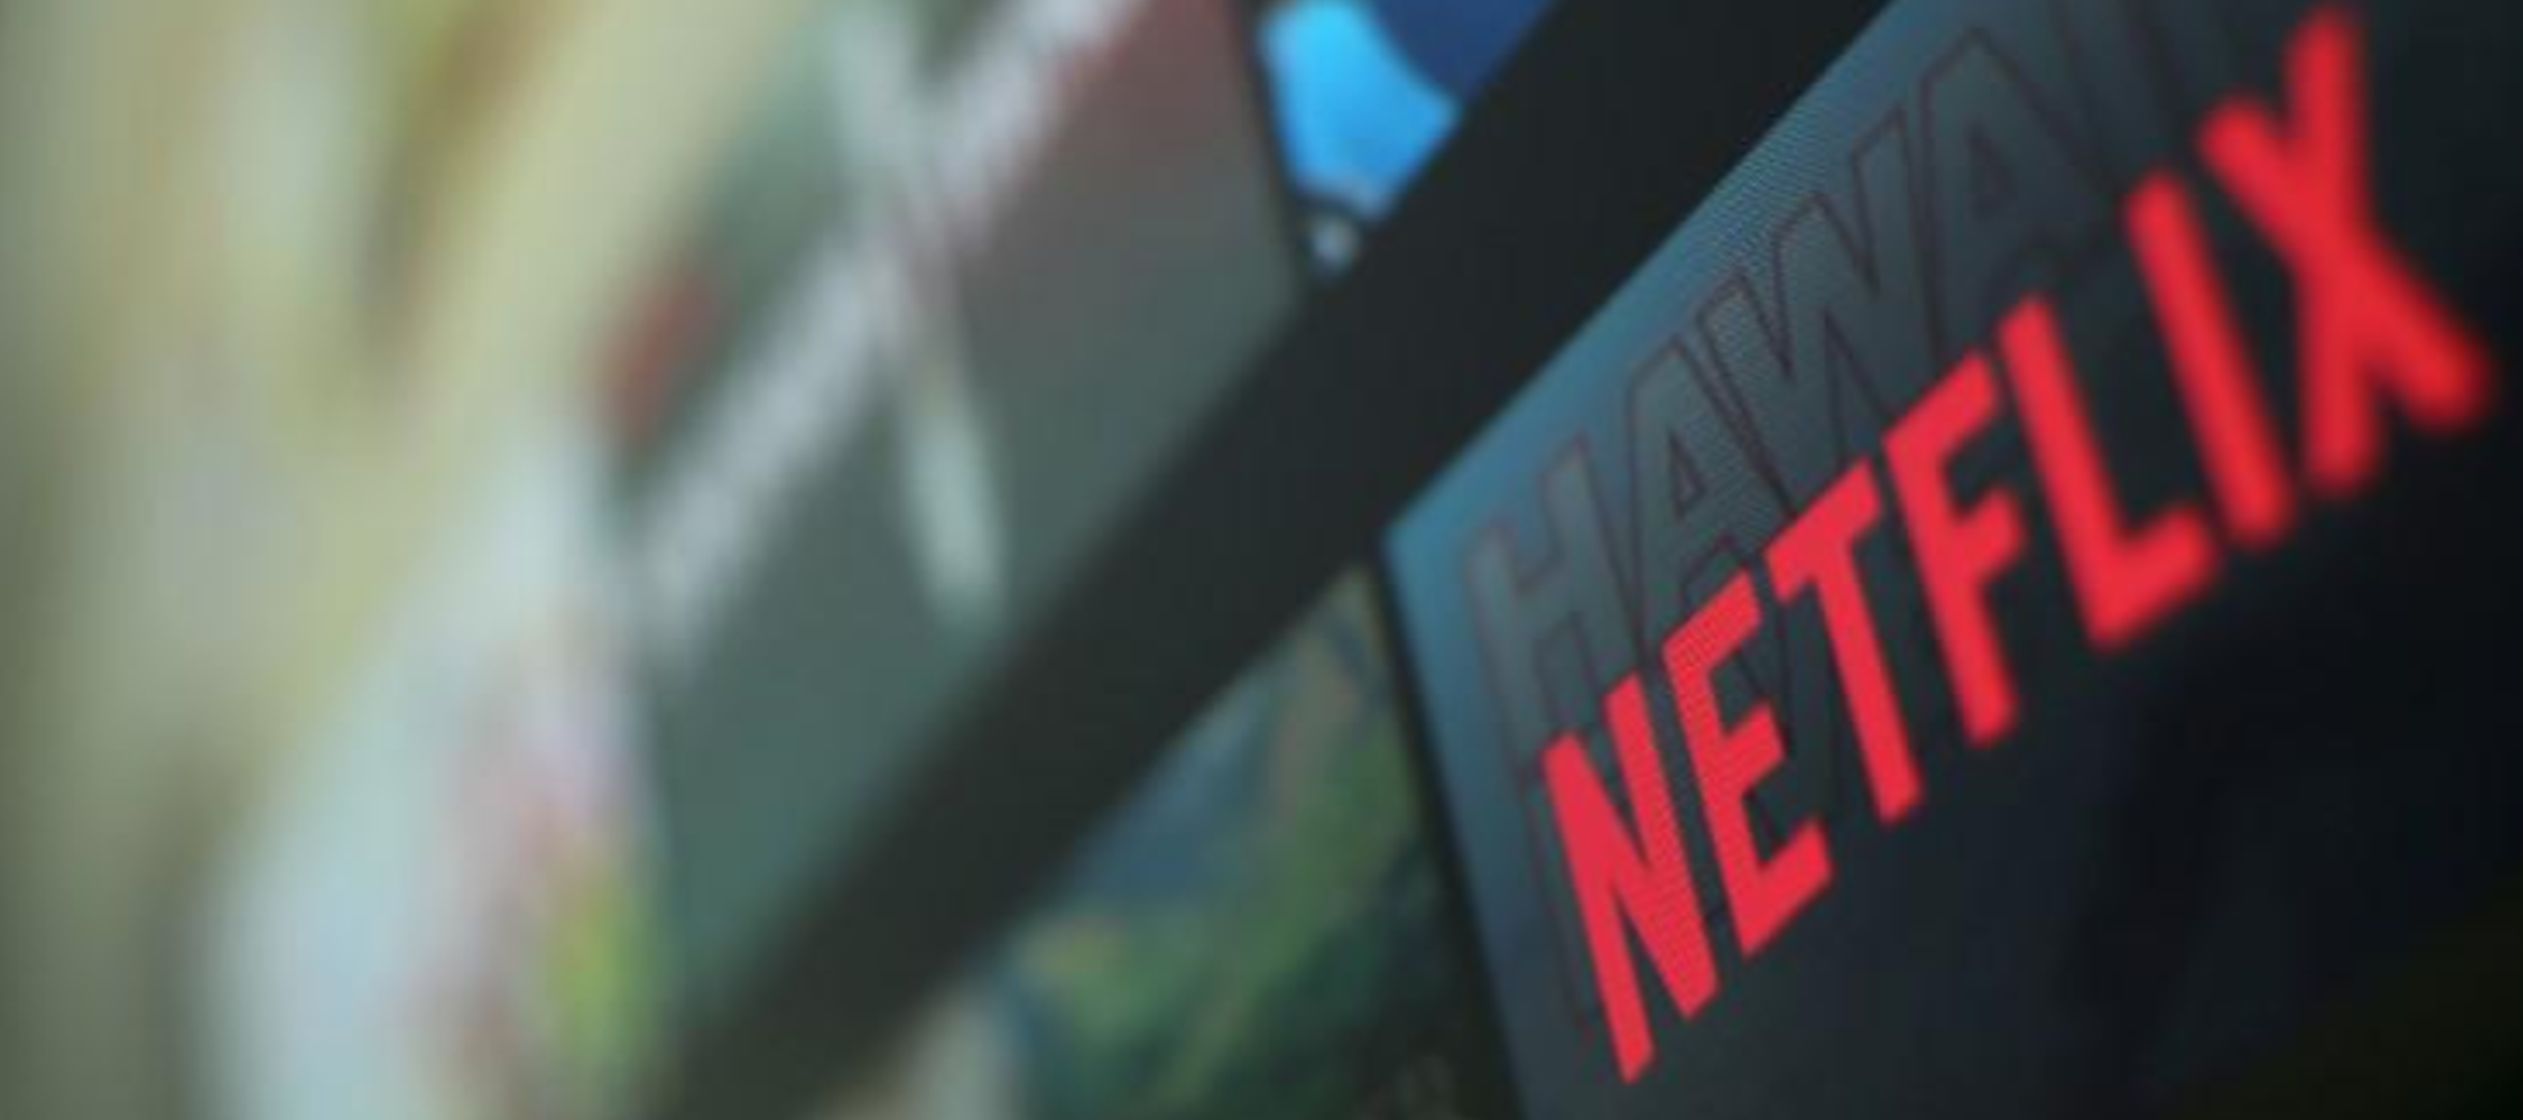 Los inversores esperaban que Netflix, que ha mostrado un rápido crecimiento, superara...